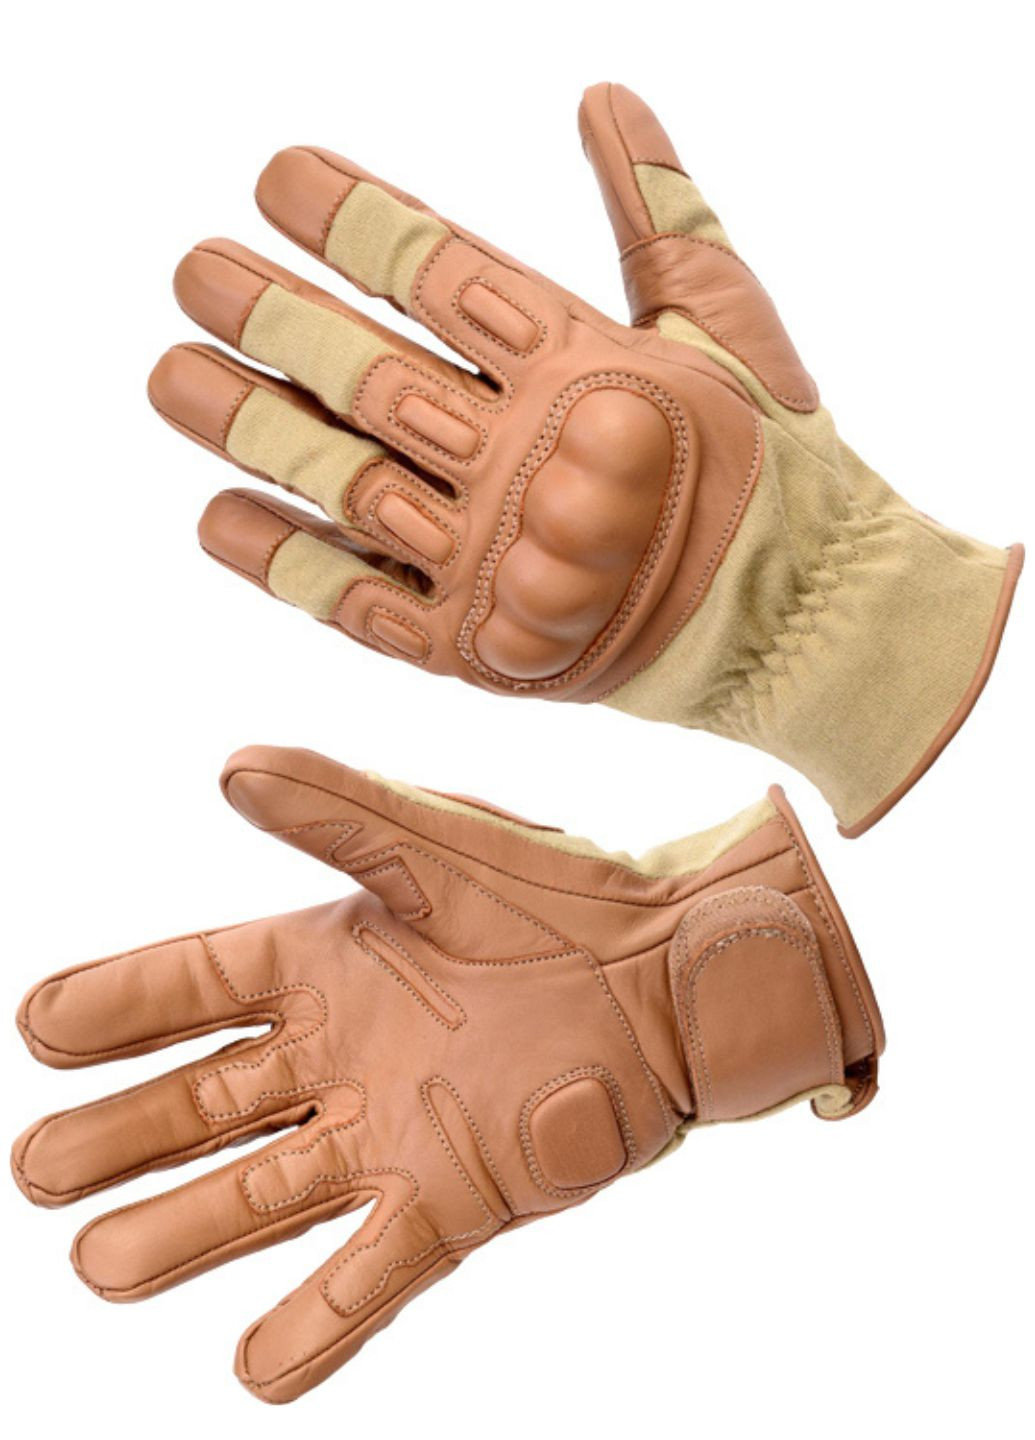 Перчатки Glove Nomex/Kevlar Folgore 2010 L Coyote Tan Defcon 5 glove nomex/kevlar folgore 2010 coyote tan (282940122)